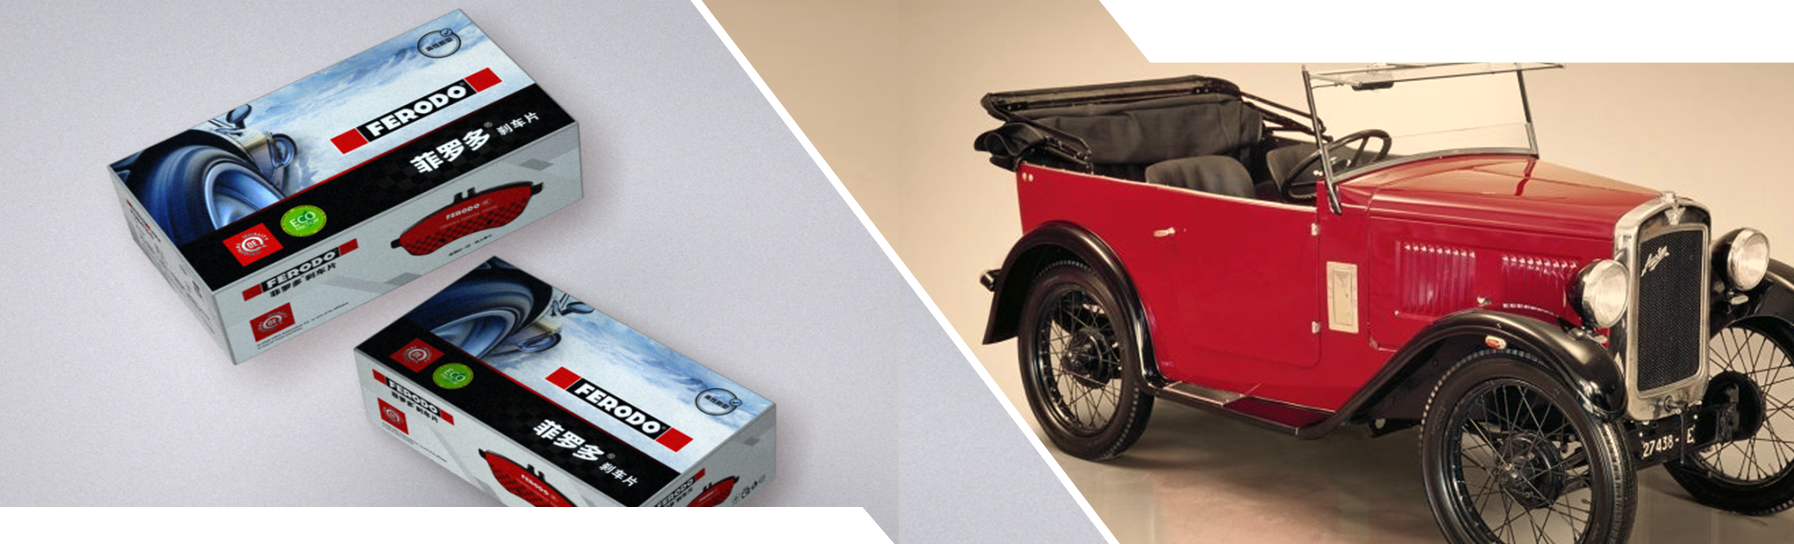 百年长“红”菲罗多FERODO，始终引领刹车片全球市场